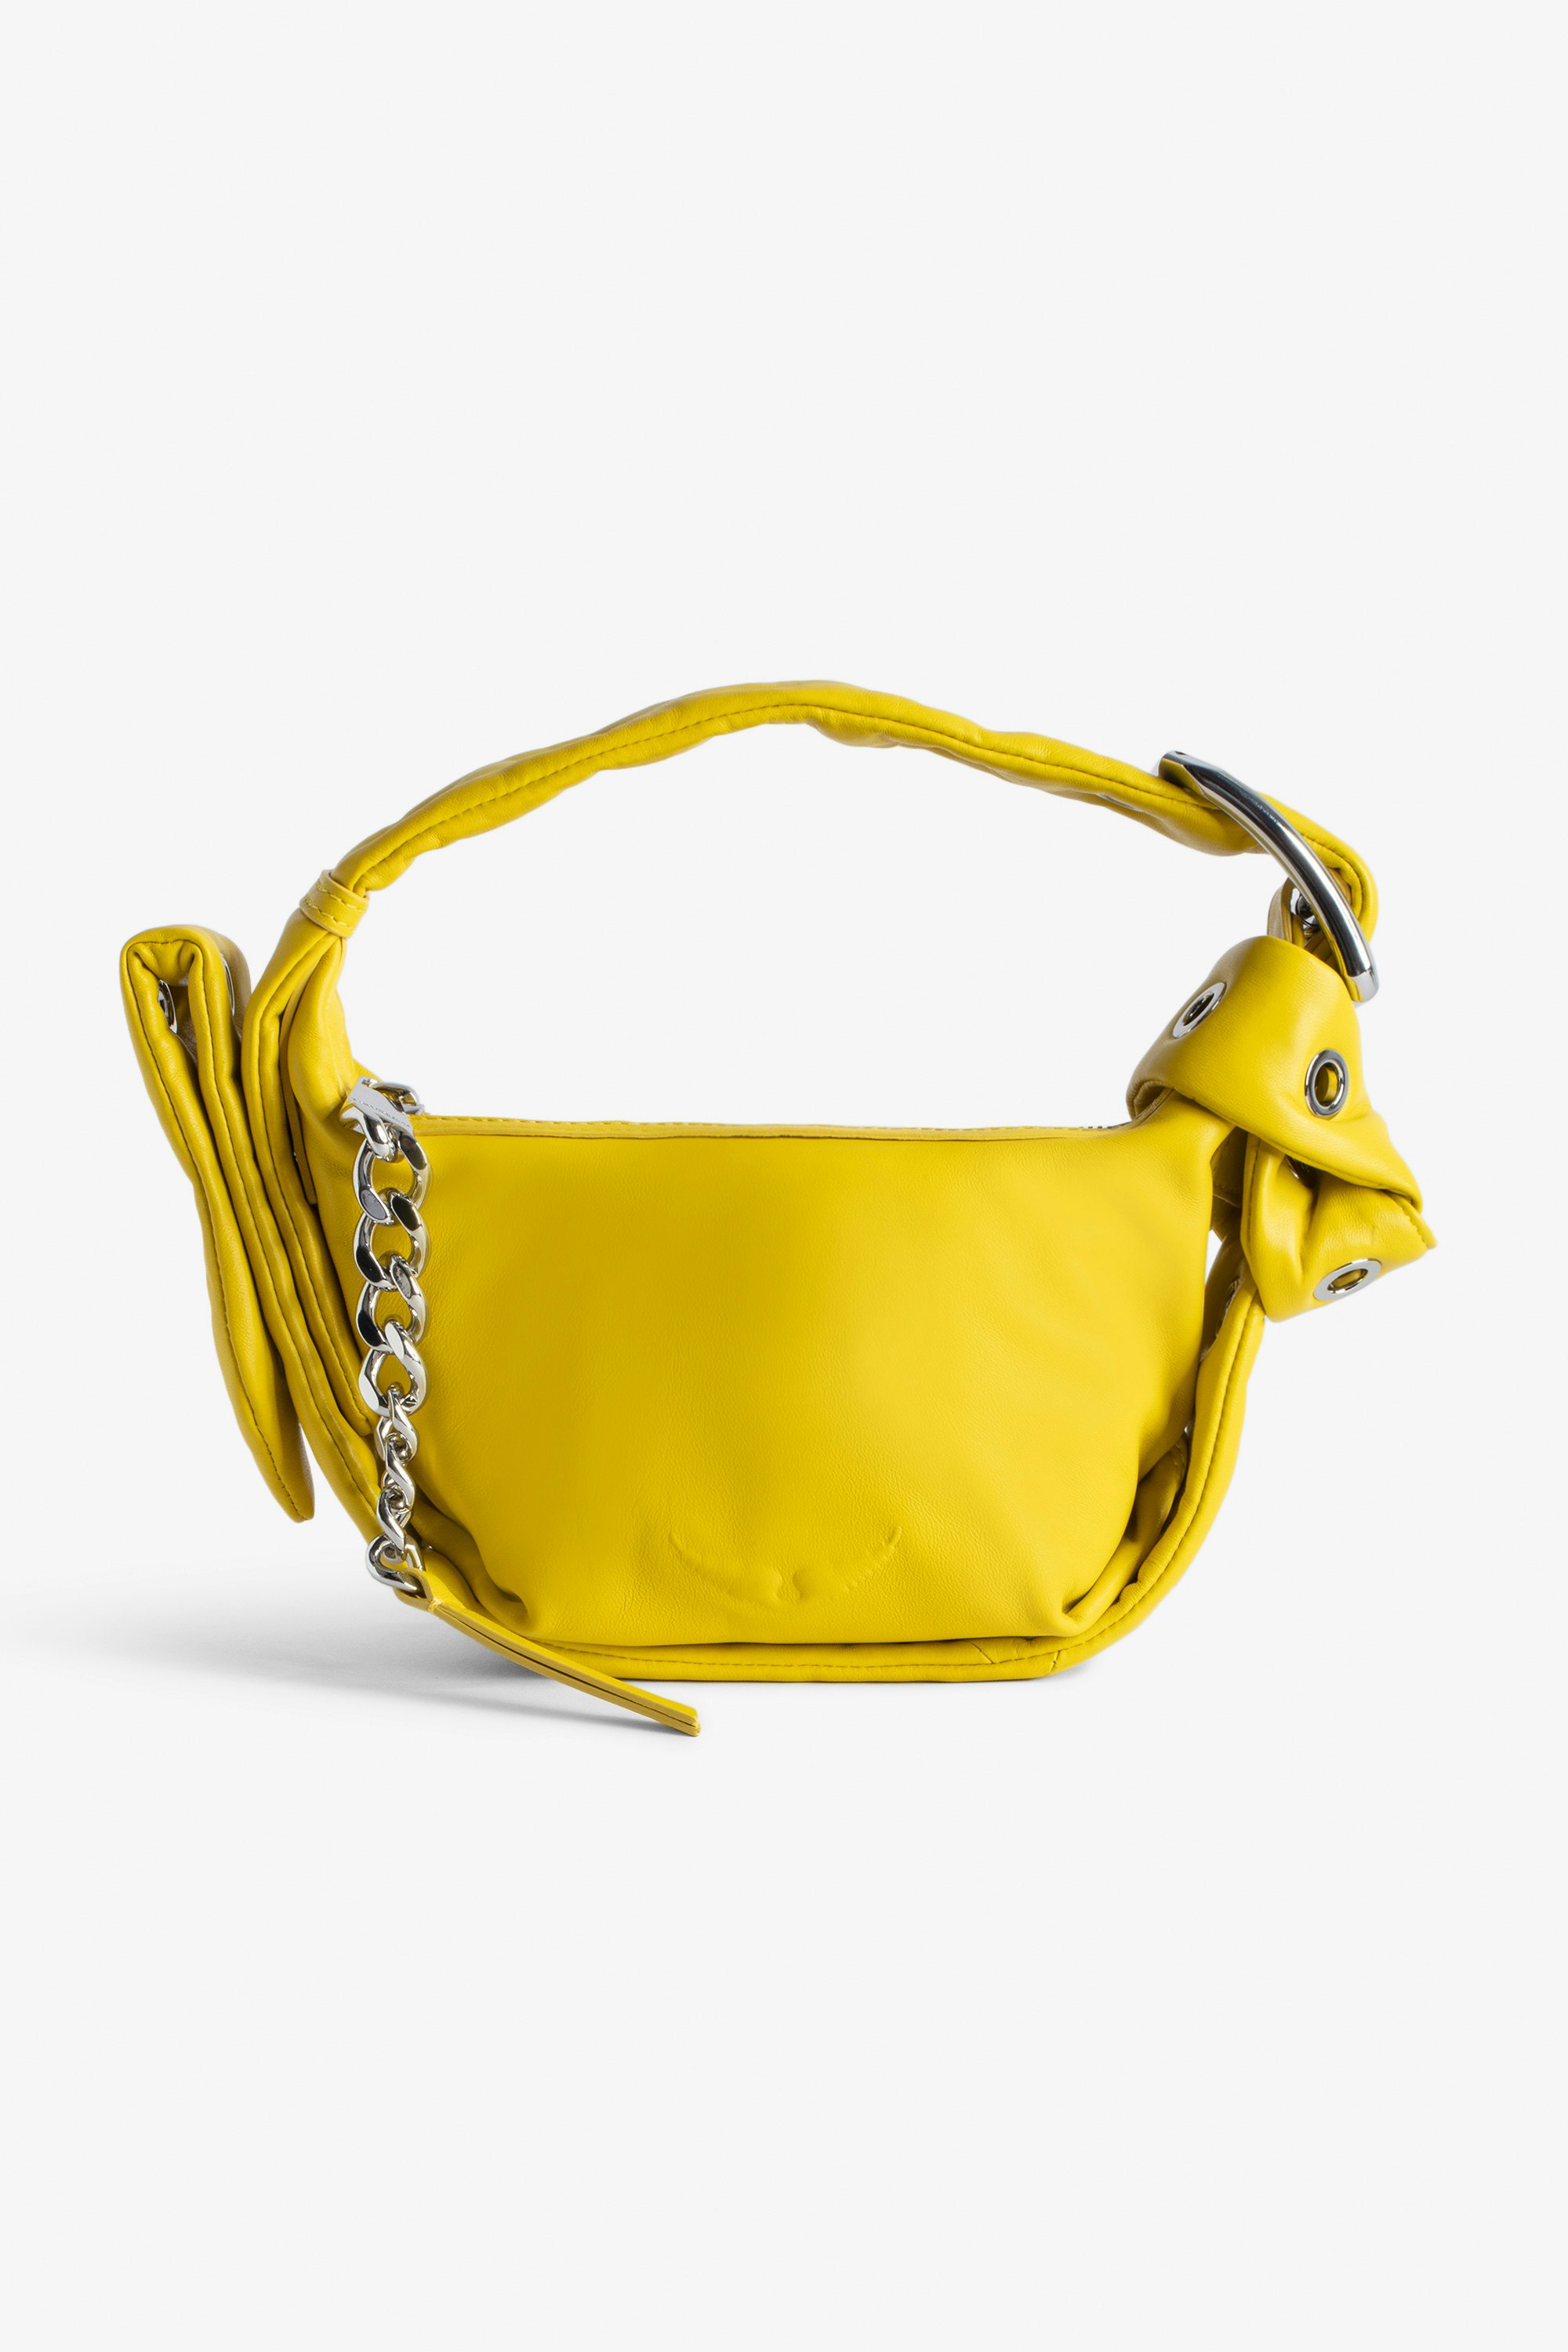 Borsa Le Cecilia XS Obsession Piccola borsa in pelle liscia gialla con tracolla e fibbia in metallo a C da donna.